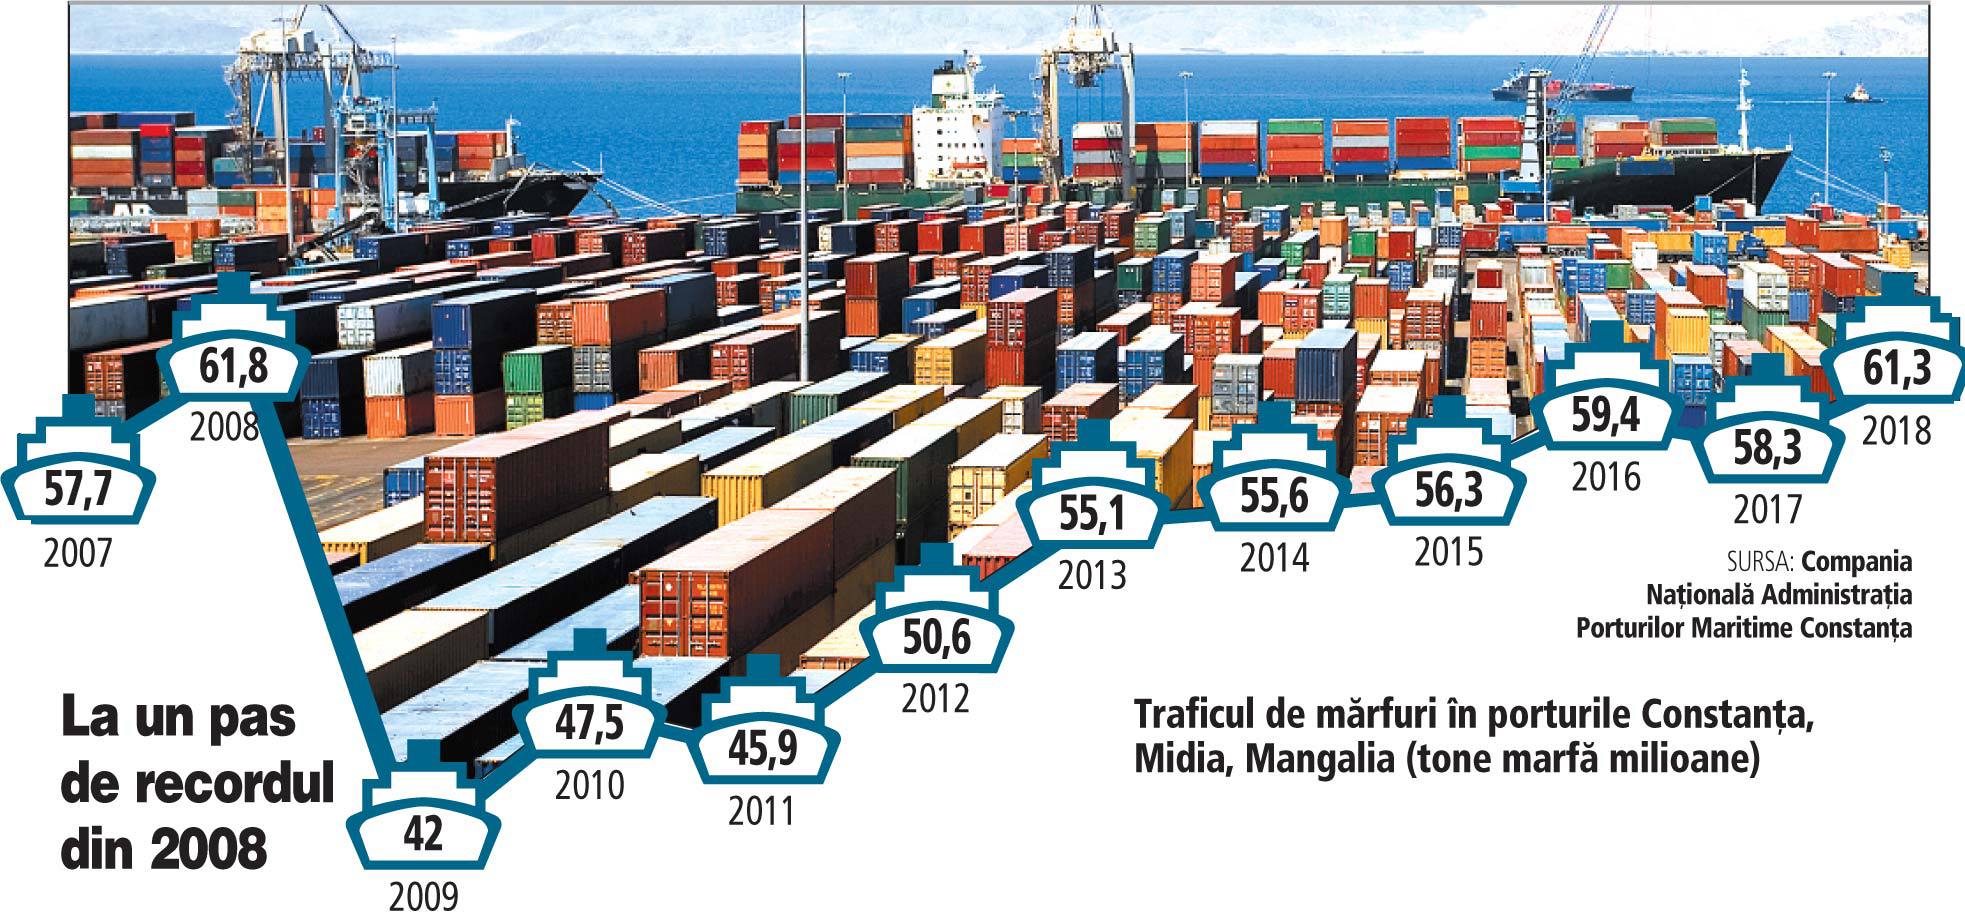 Traficul de mărfuri în porturile Constanţa, Midia şi Mangalia a ajuns la 61,3 milioane de tone anul trecut, plus 5%